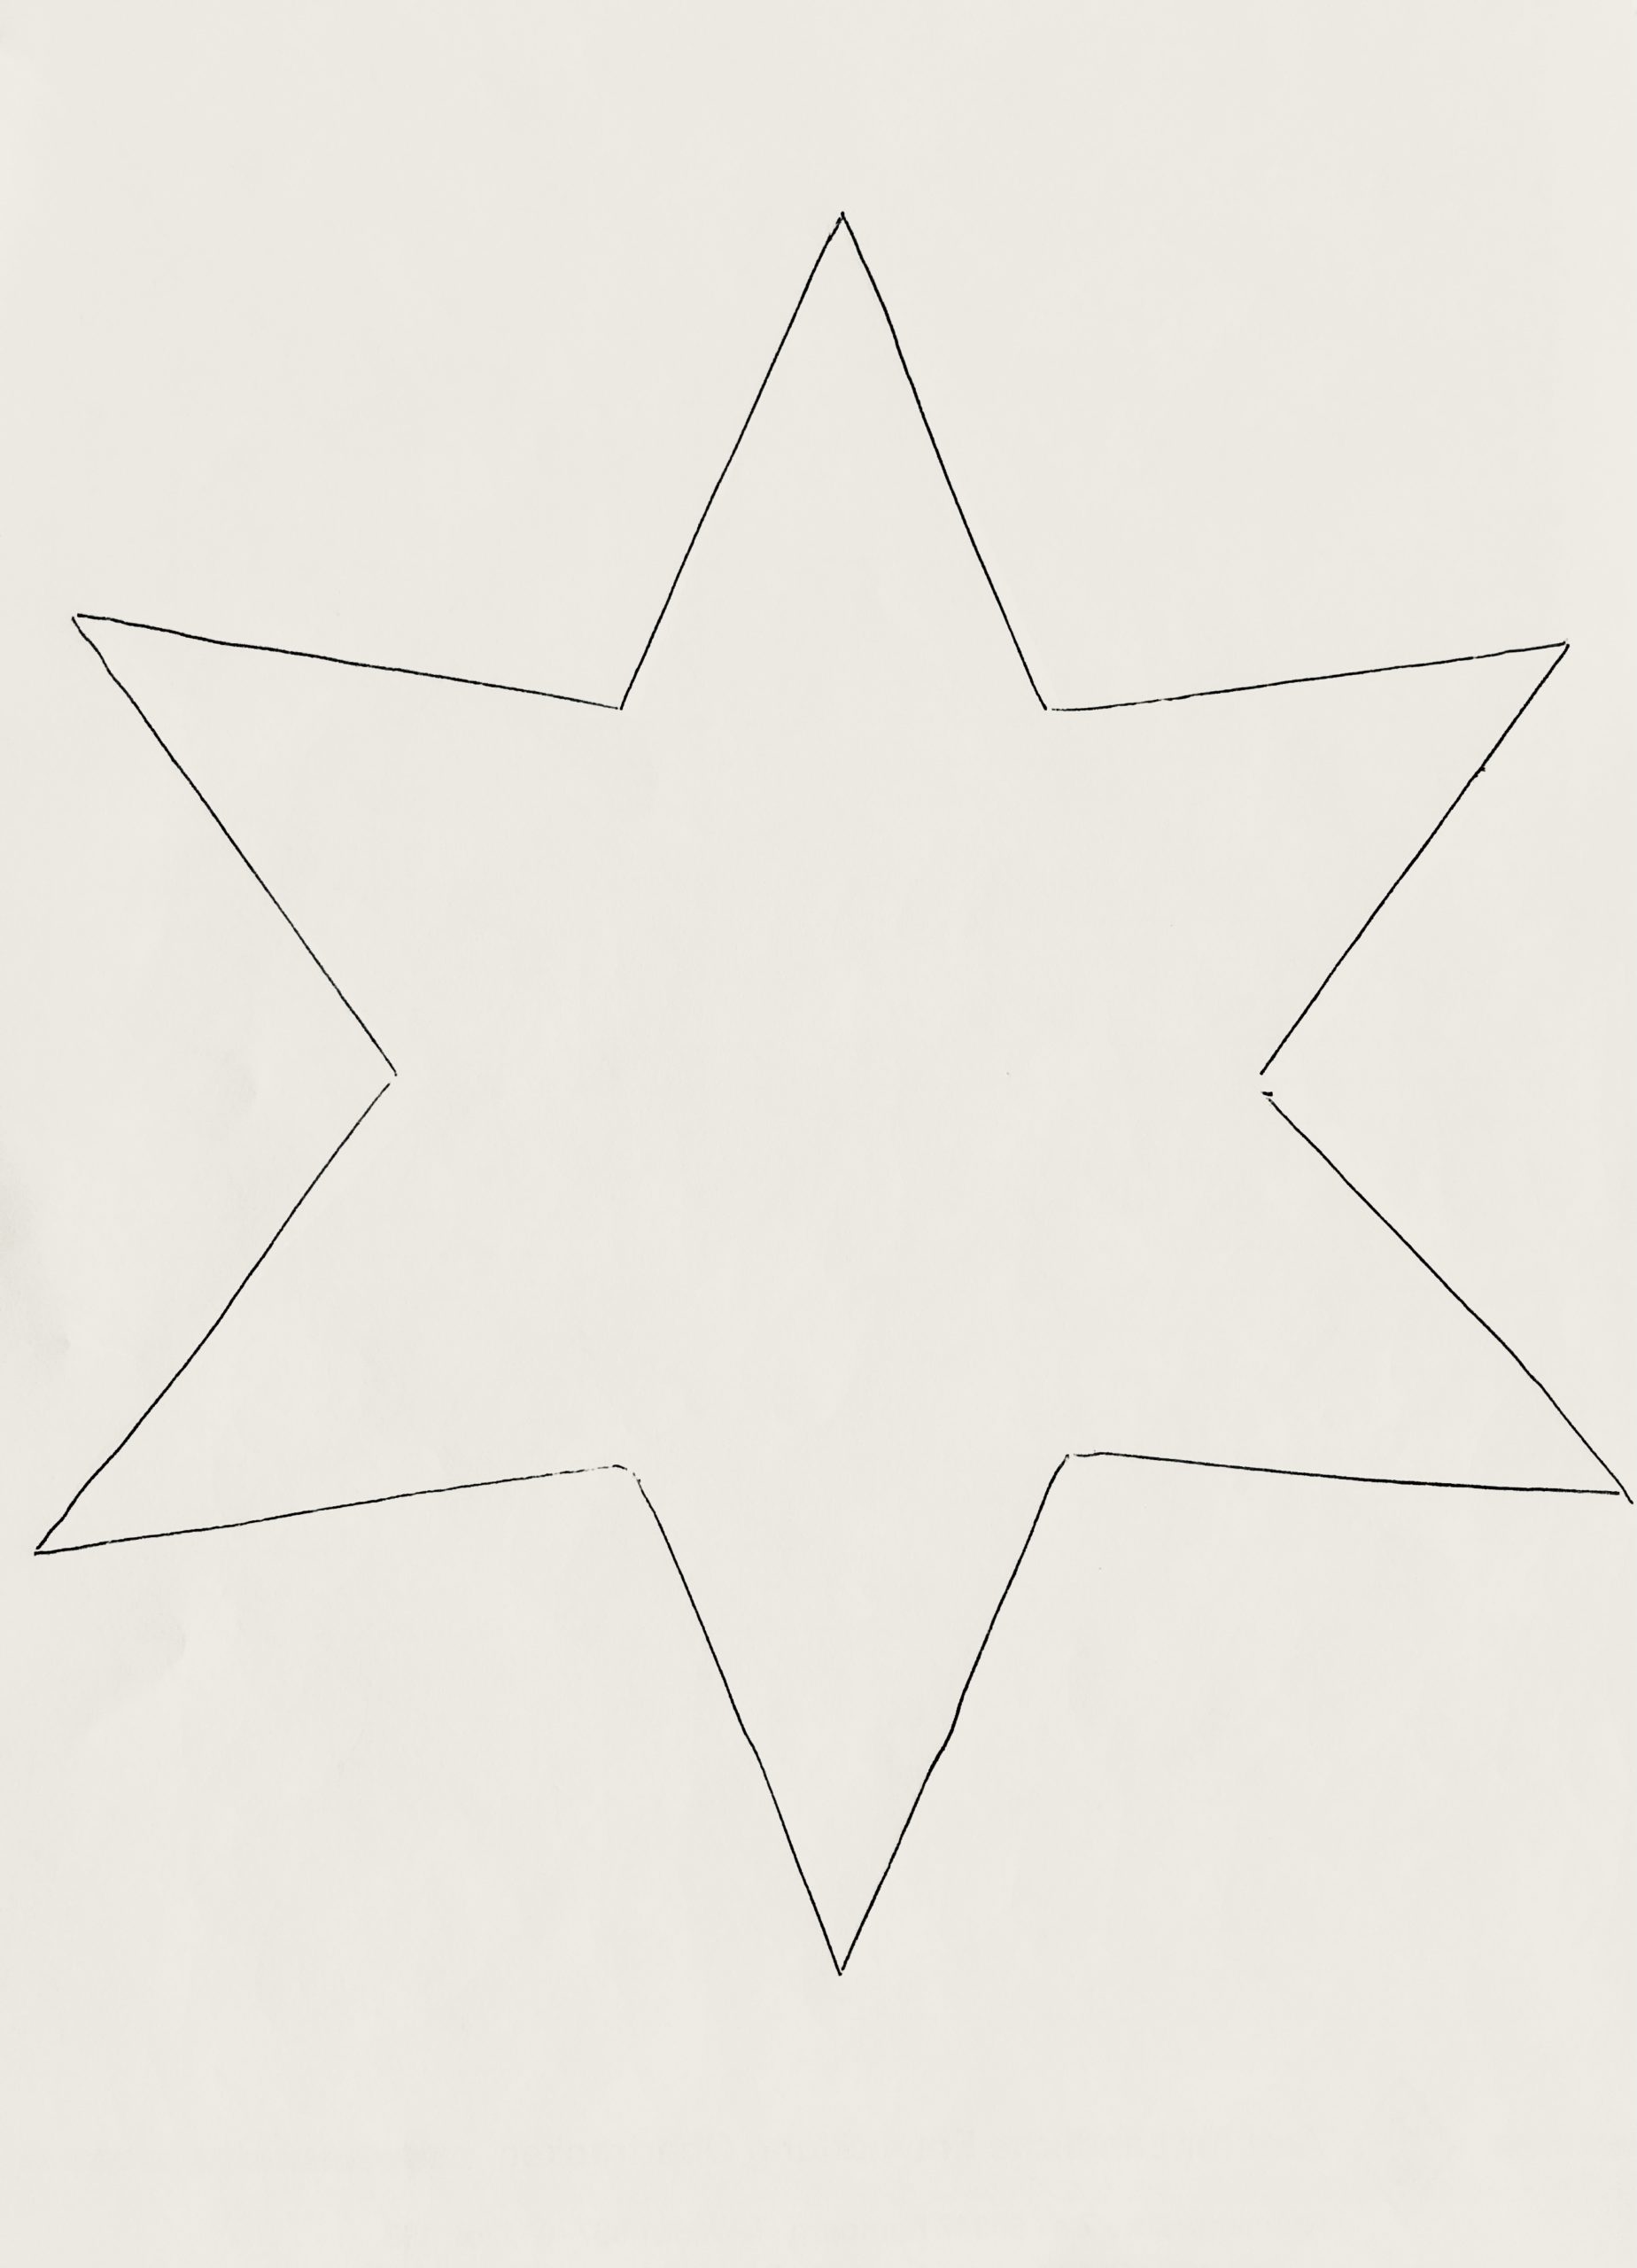 Bild zum Schritt 1 für die Kinder-Beschäftigung: 'Für jeden fertigen Stern brauchst du zwei ausgeschnittene Sterne. Dafür...'